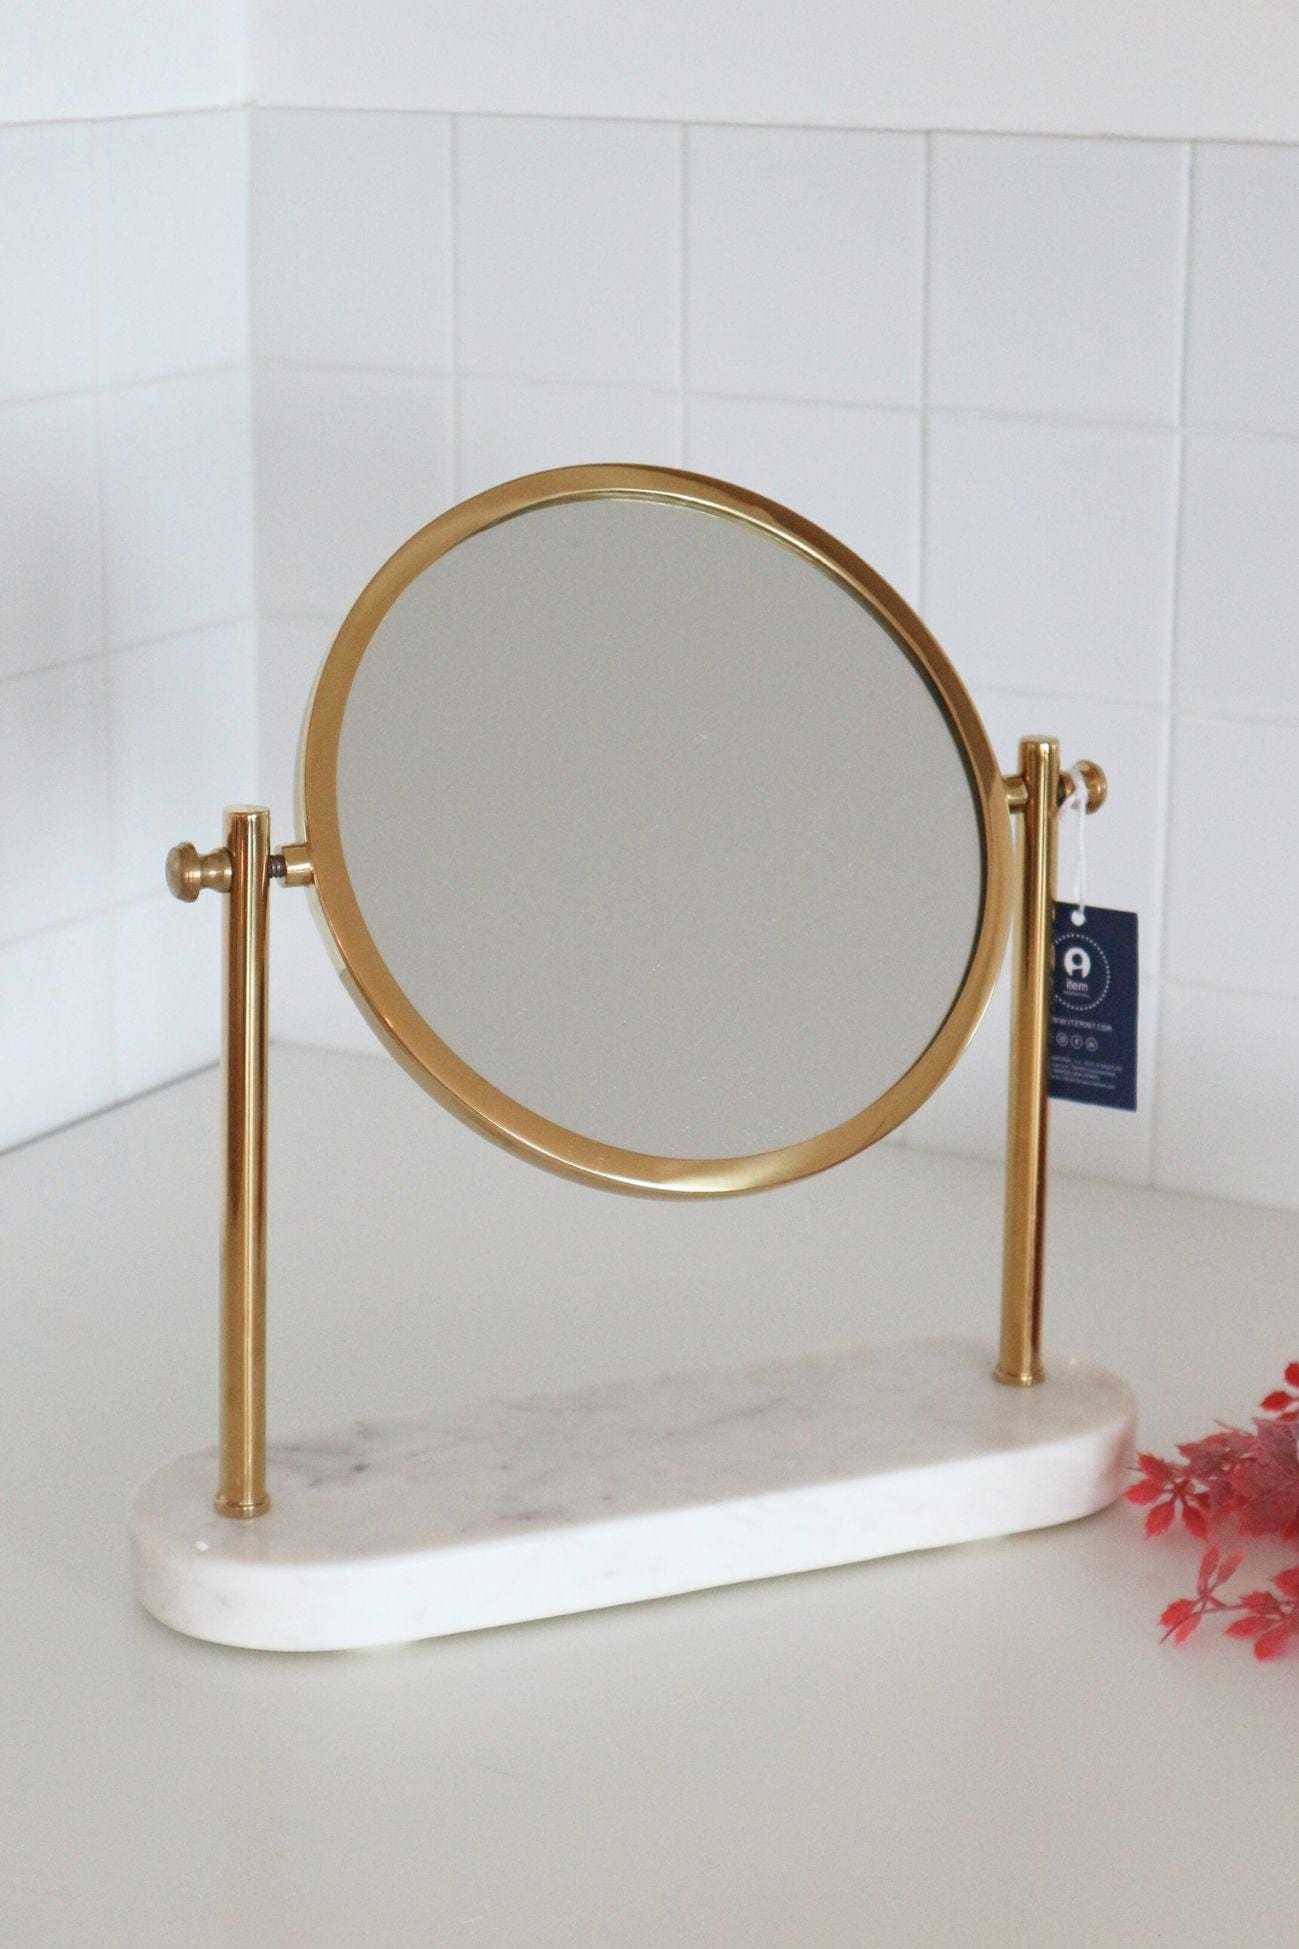 Item International Yennefer Yennefer - Specchio tondo con supporto in metallo dorato e base in marmo | Item International